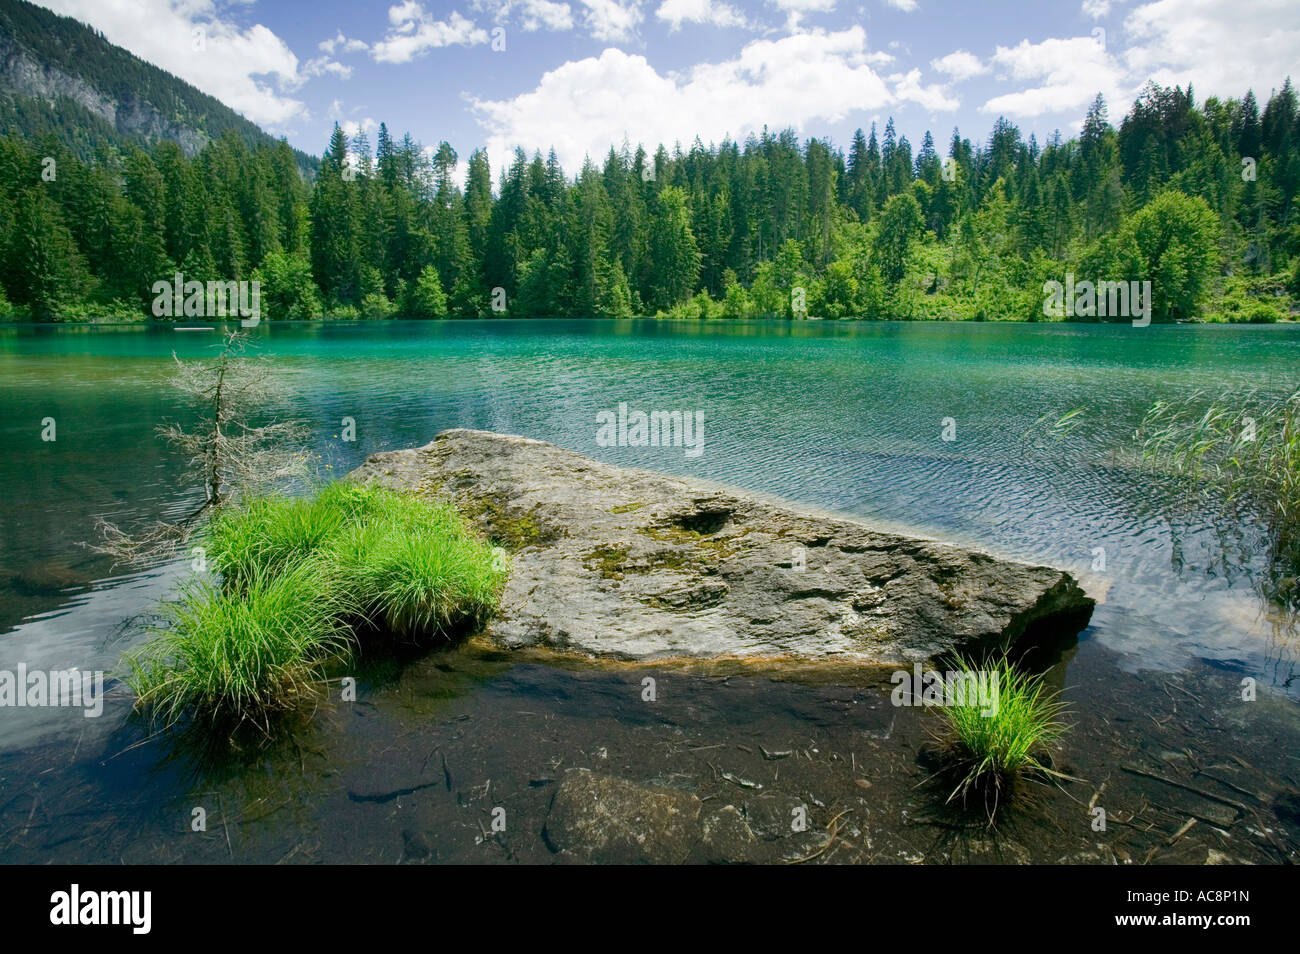 Lake près de Cresta Flims, Suisse Banque D'Images